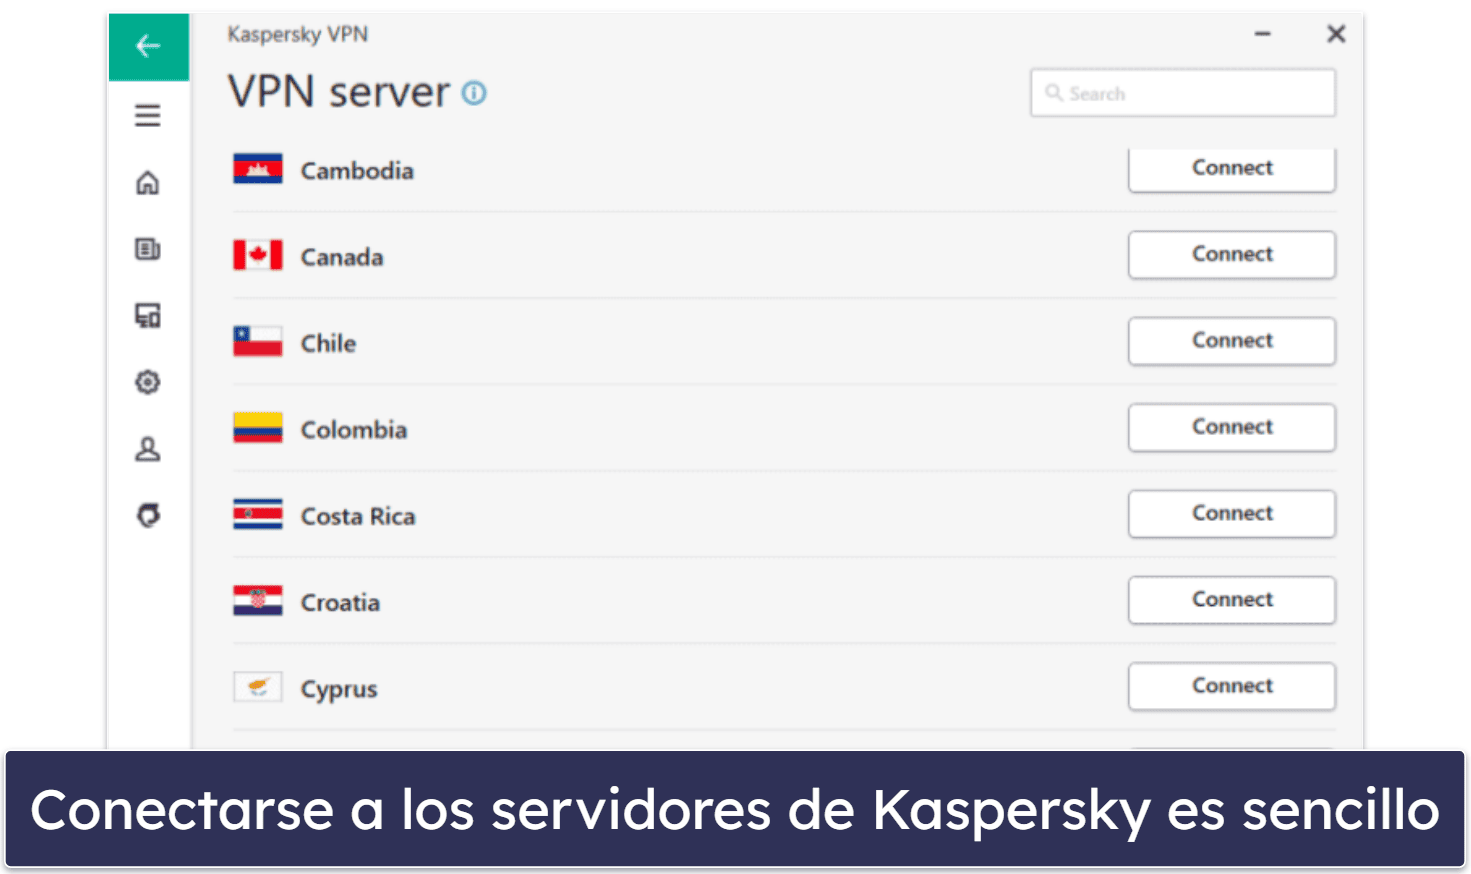 8. Kaspersky: Se trata de un antivirus con buenos controles parentales y una VPN decente para streaming